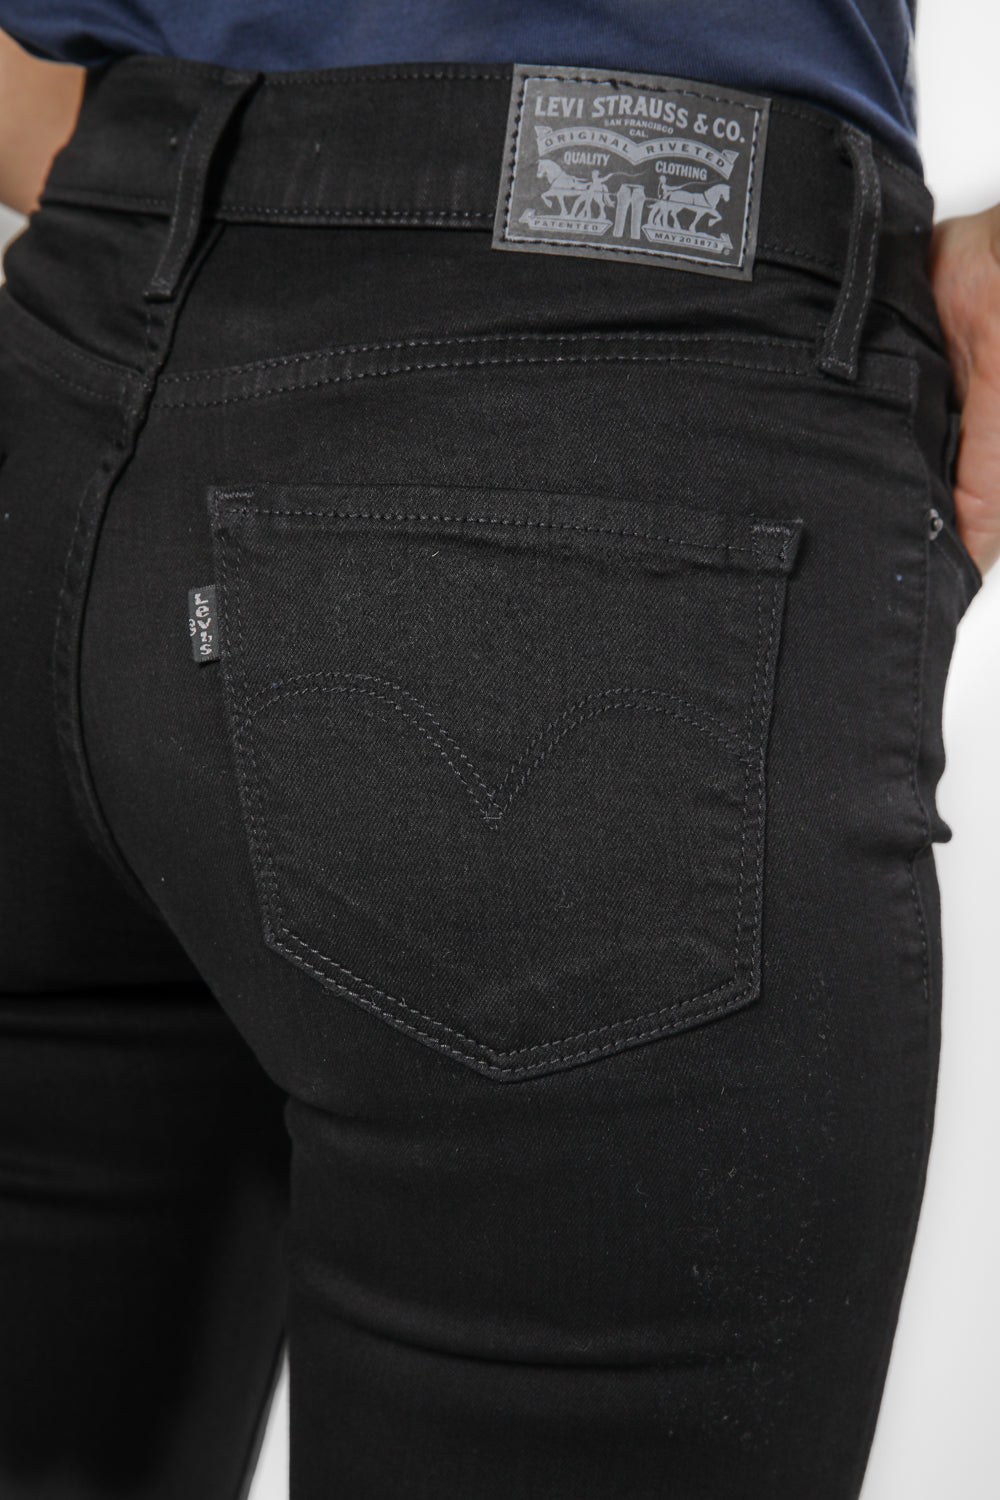 ג'ינס לנשים 311 SHAPING SKINNY בצבע שחור